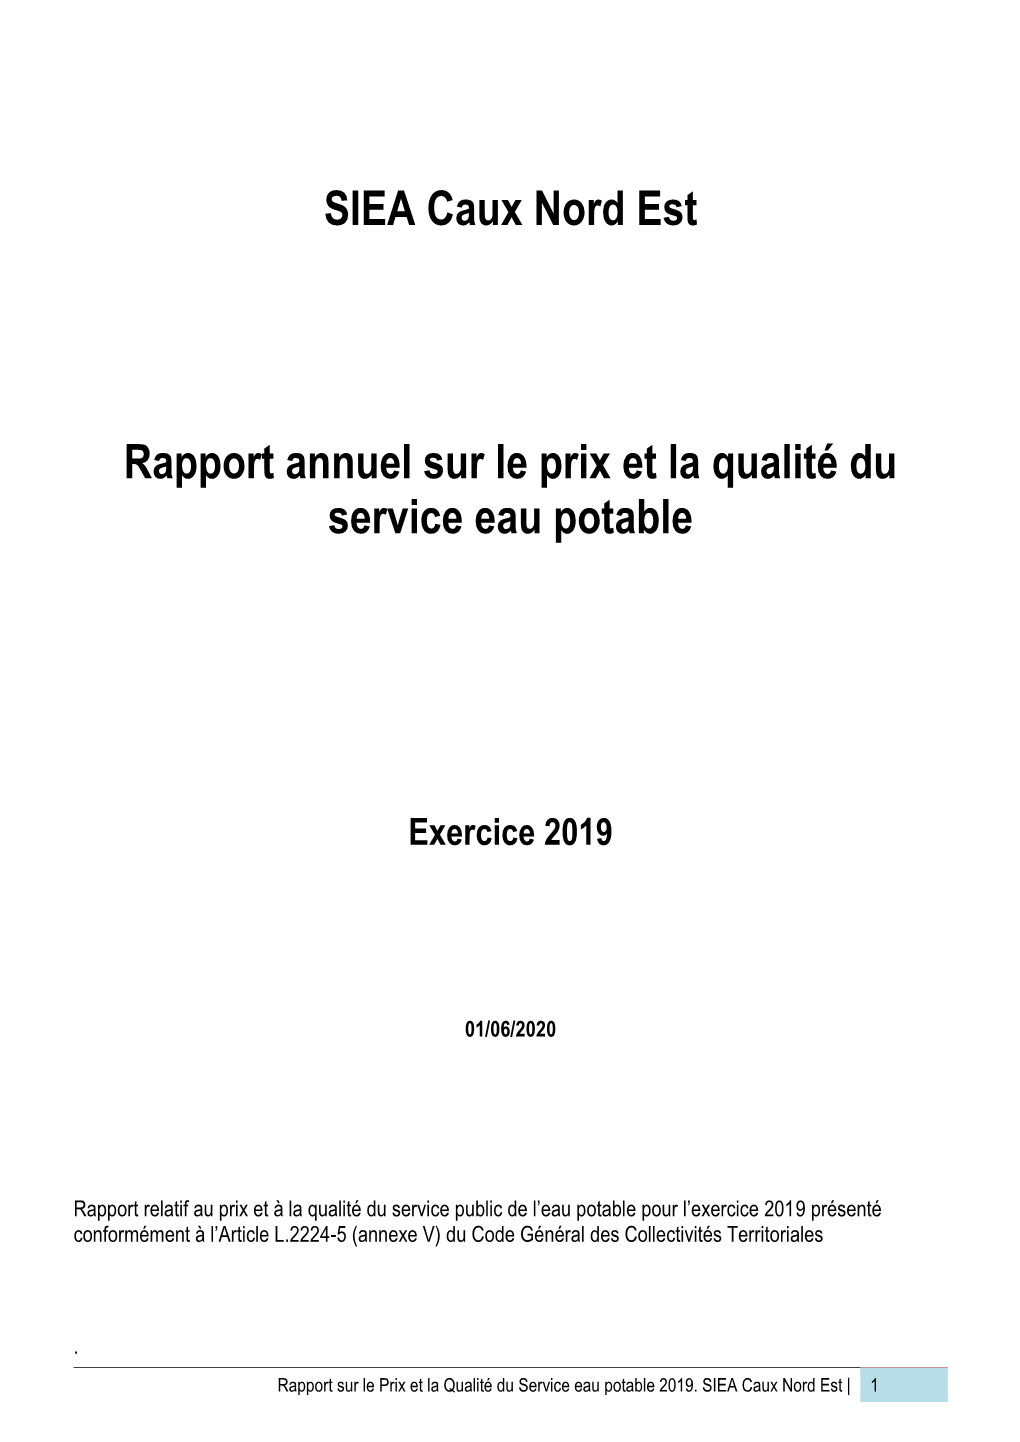 SIEA Caux Nord Est Rapport Annuel Sur Le Prix Et La Qualité Du Service Eau Potable